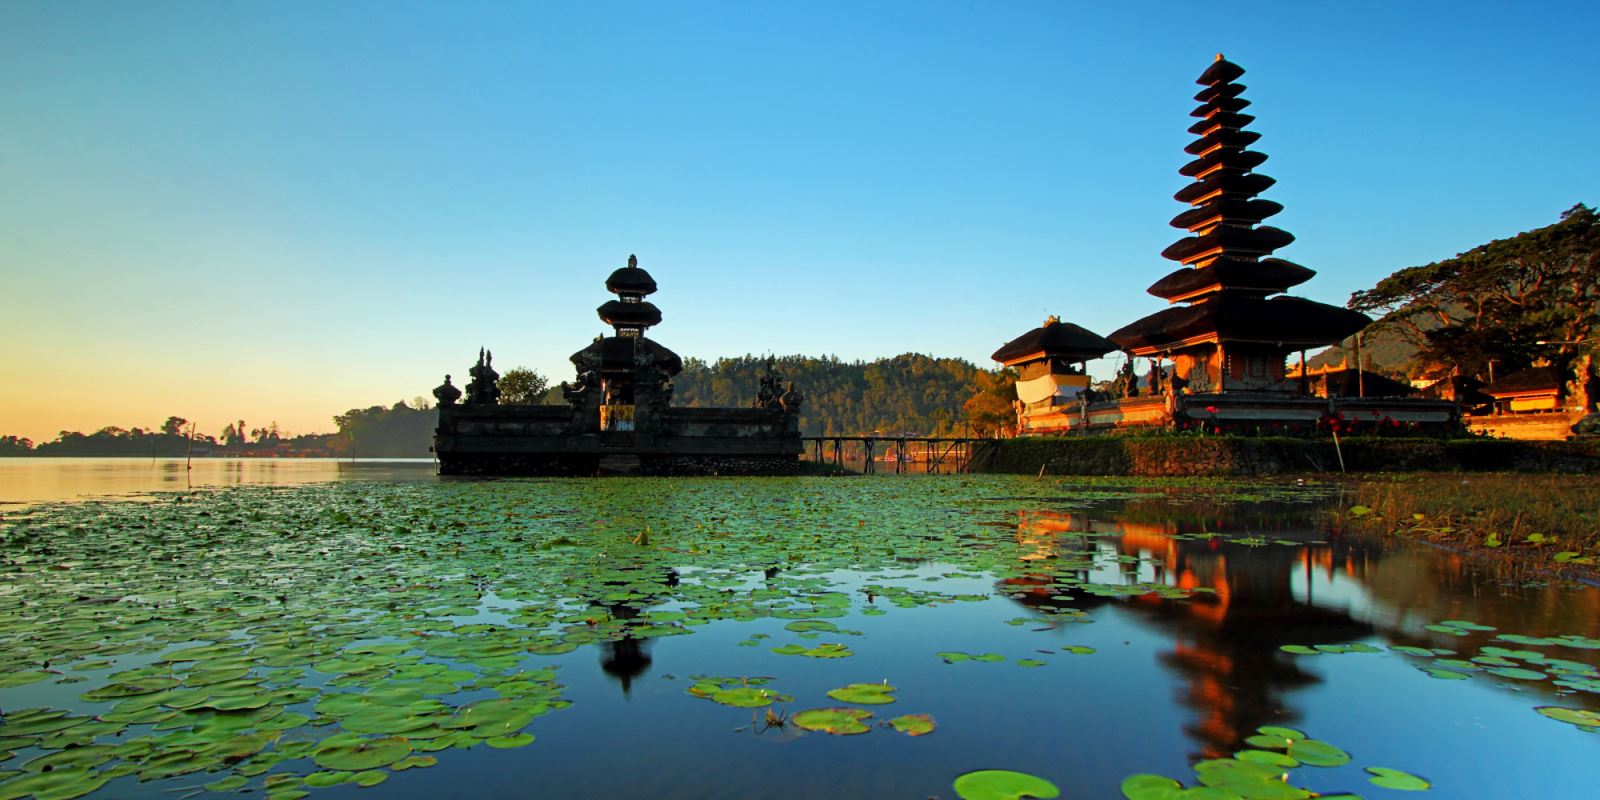 Kinh nghiệm và những lưu ý cần biết khi đi du lịch tại Indonesia